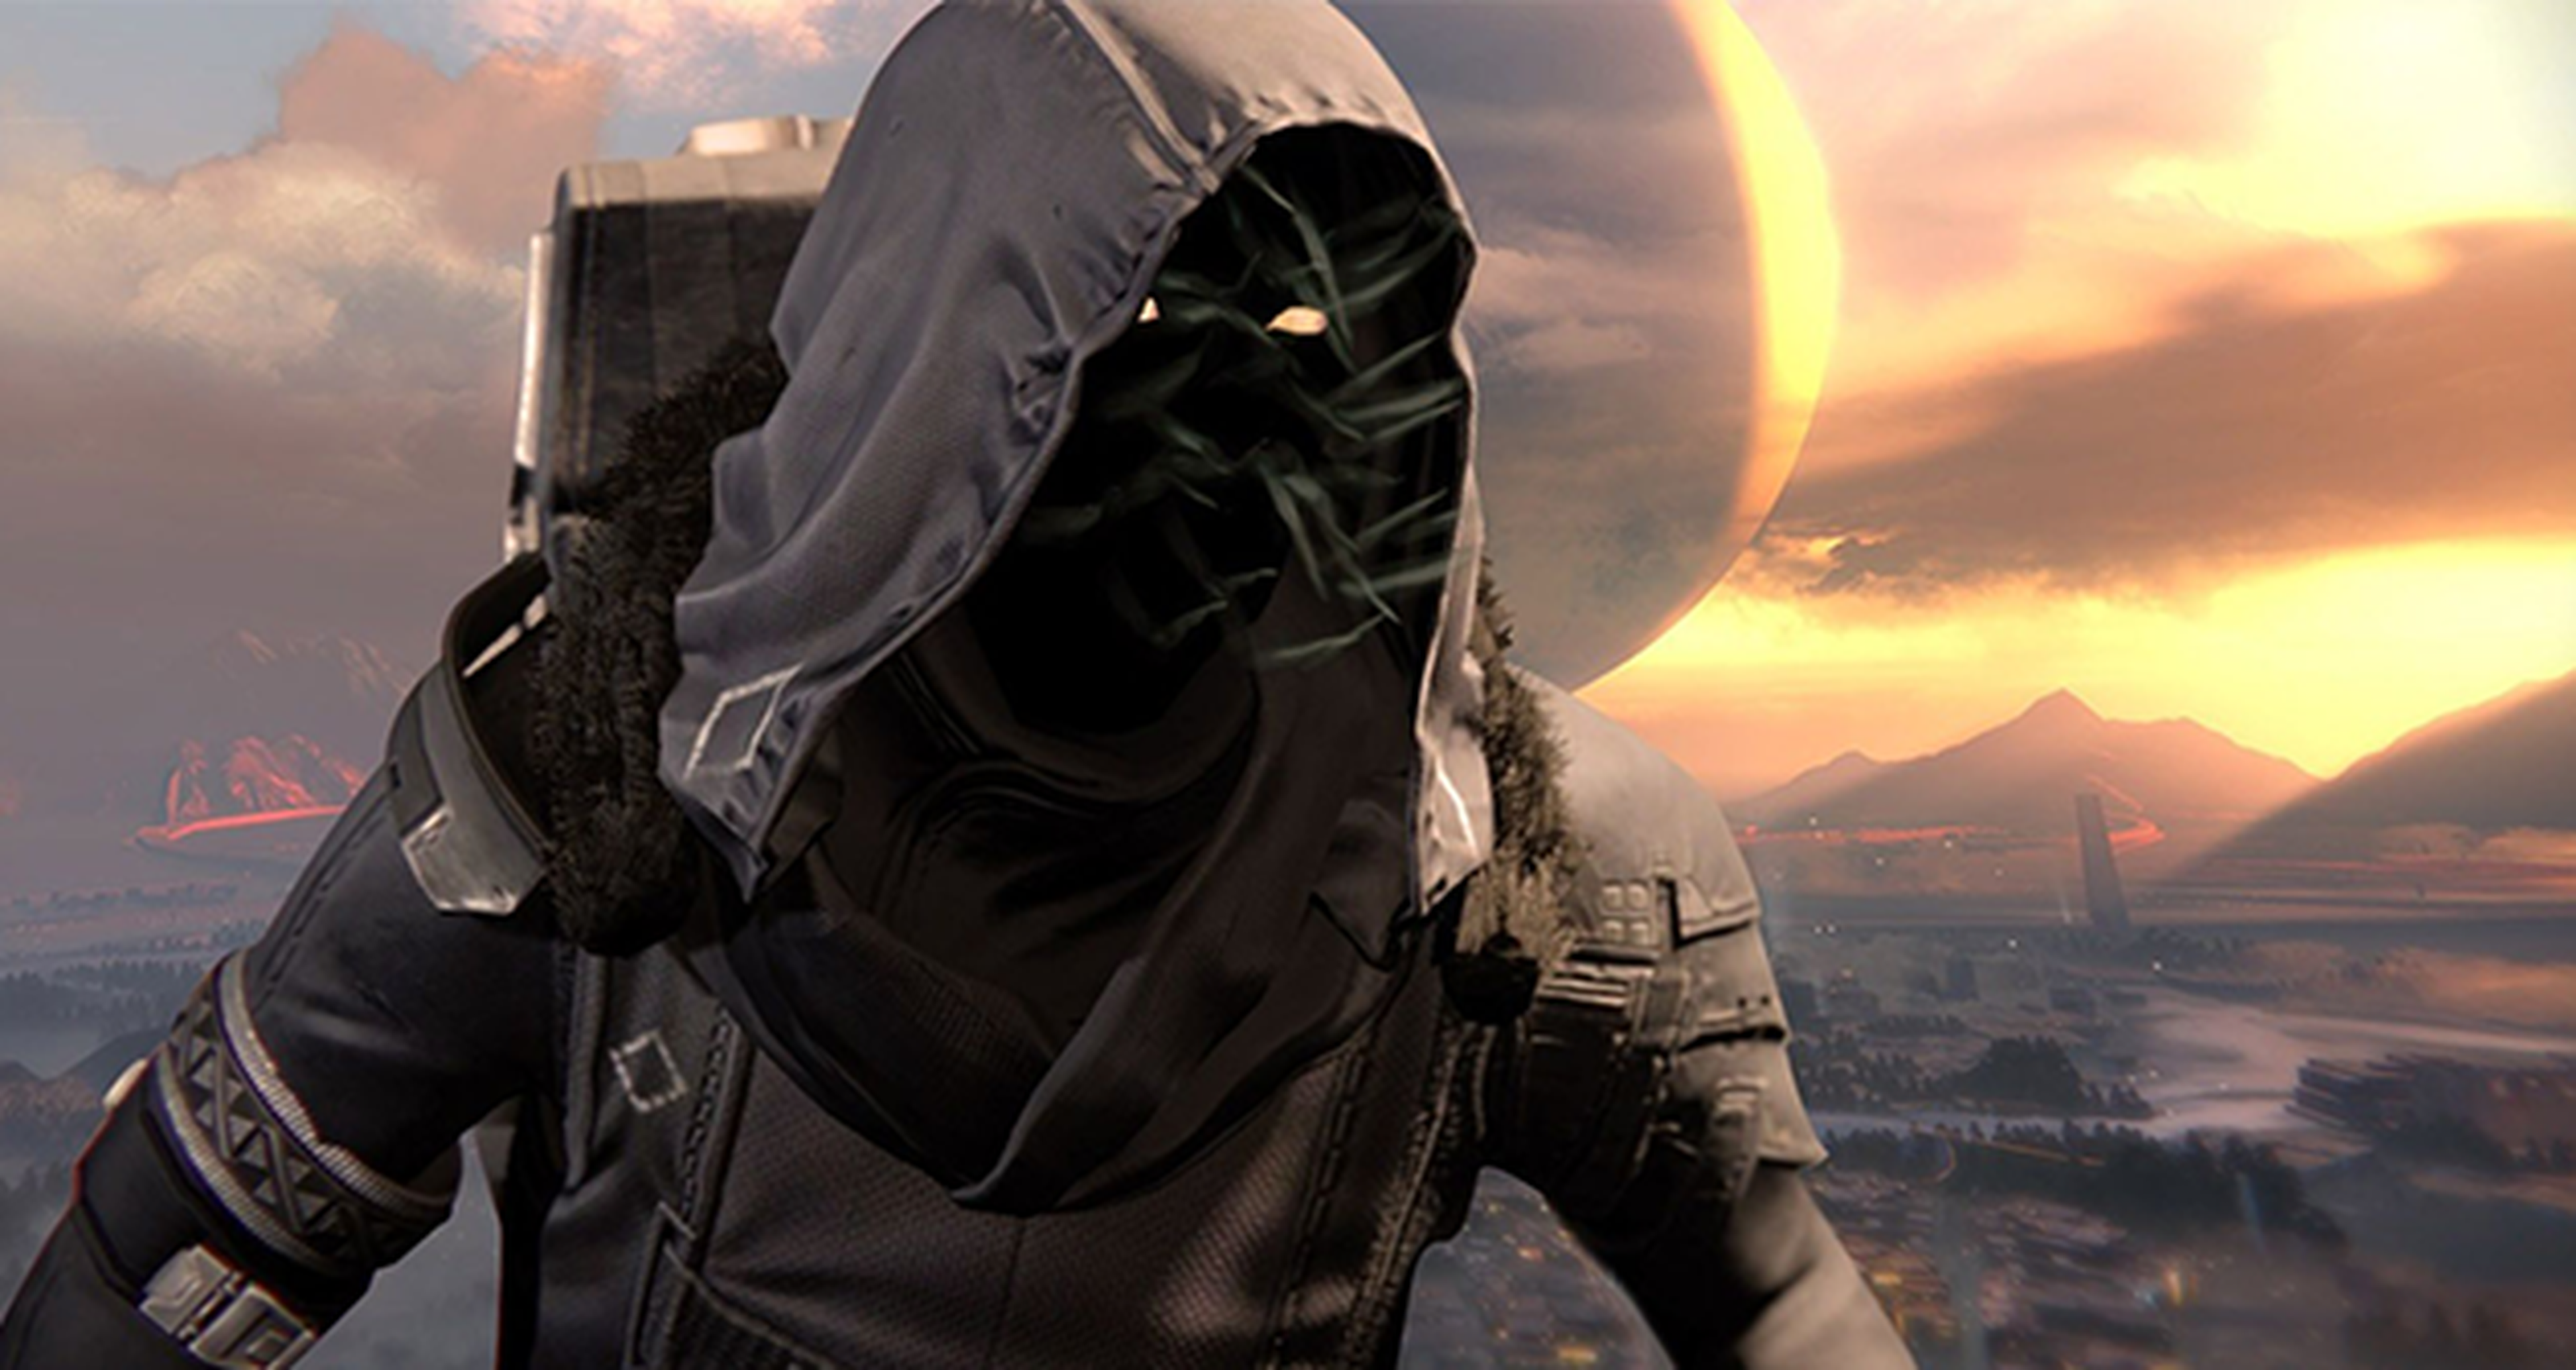 Bungie extiende la estancia de Xur en Destiny por los ataques a Xbox Live y PSN